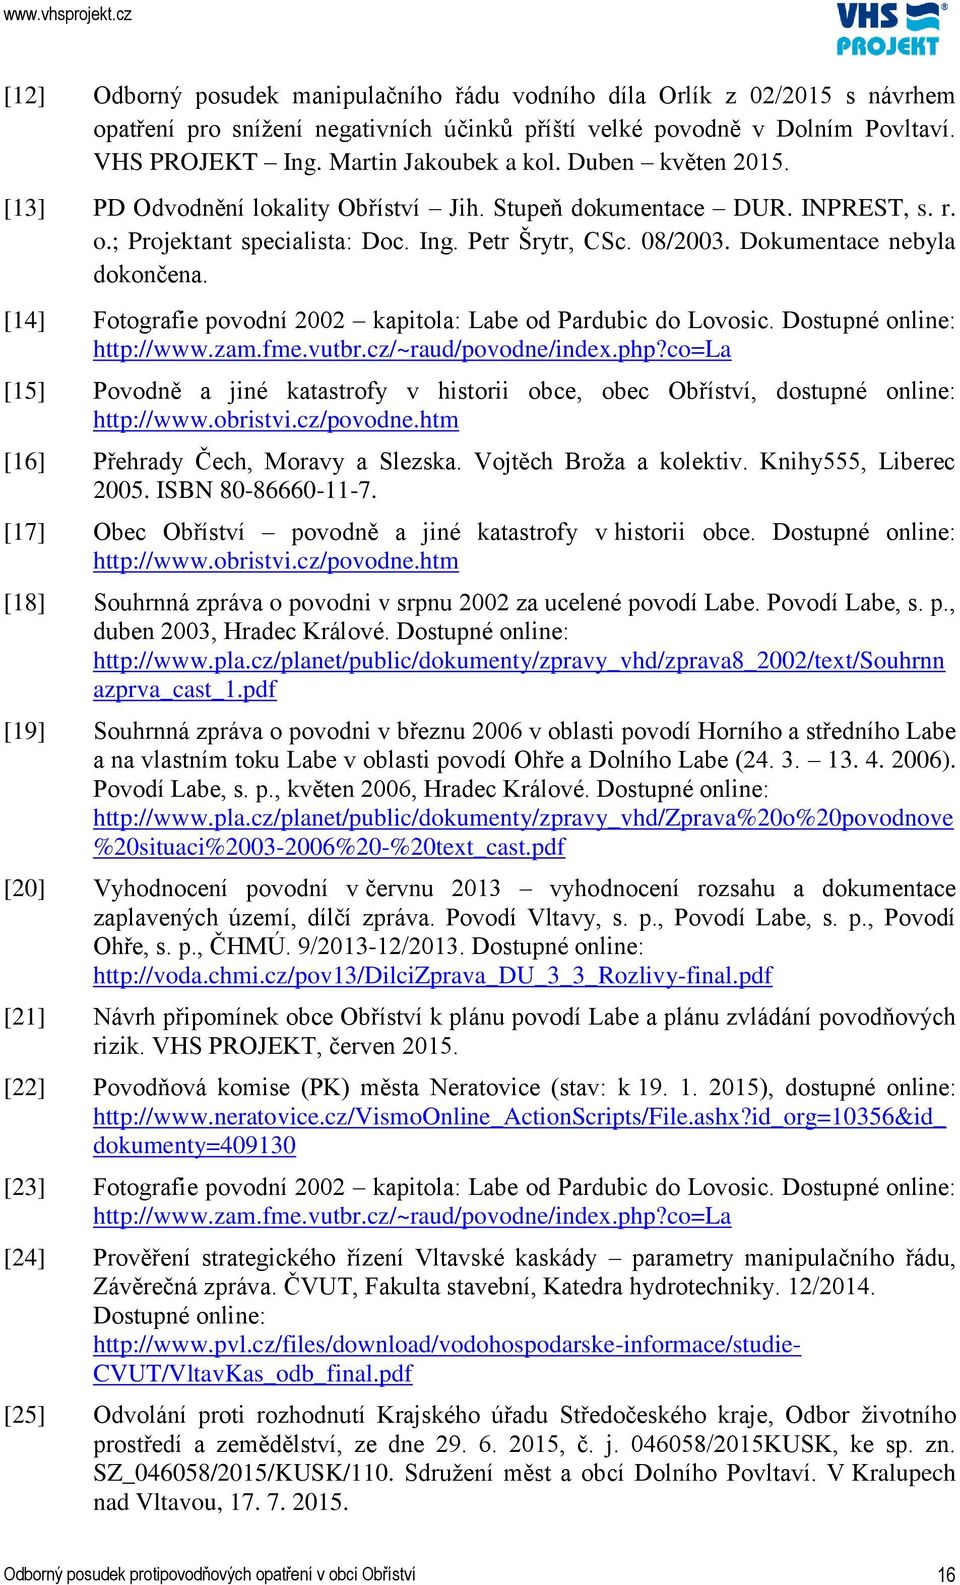 [14] Fotografie povodní 2002 kapitola: Labe od Pardubic do Lovosic. Dostupné online: http://www.zam.fme.vutbr.cz/~raud/povodne/index.php?